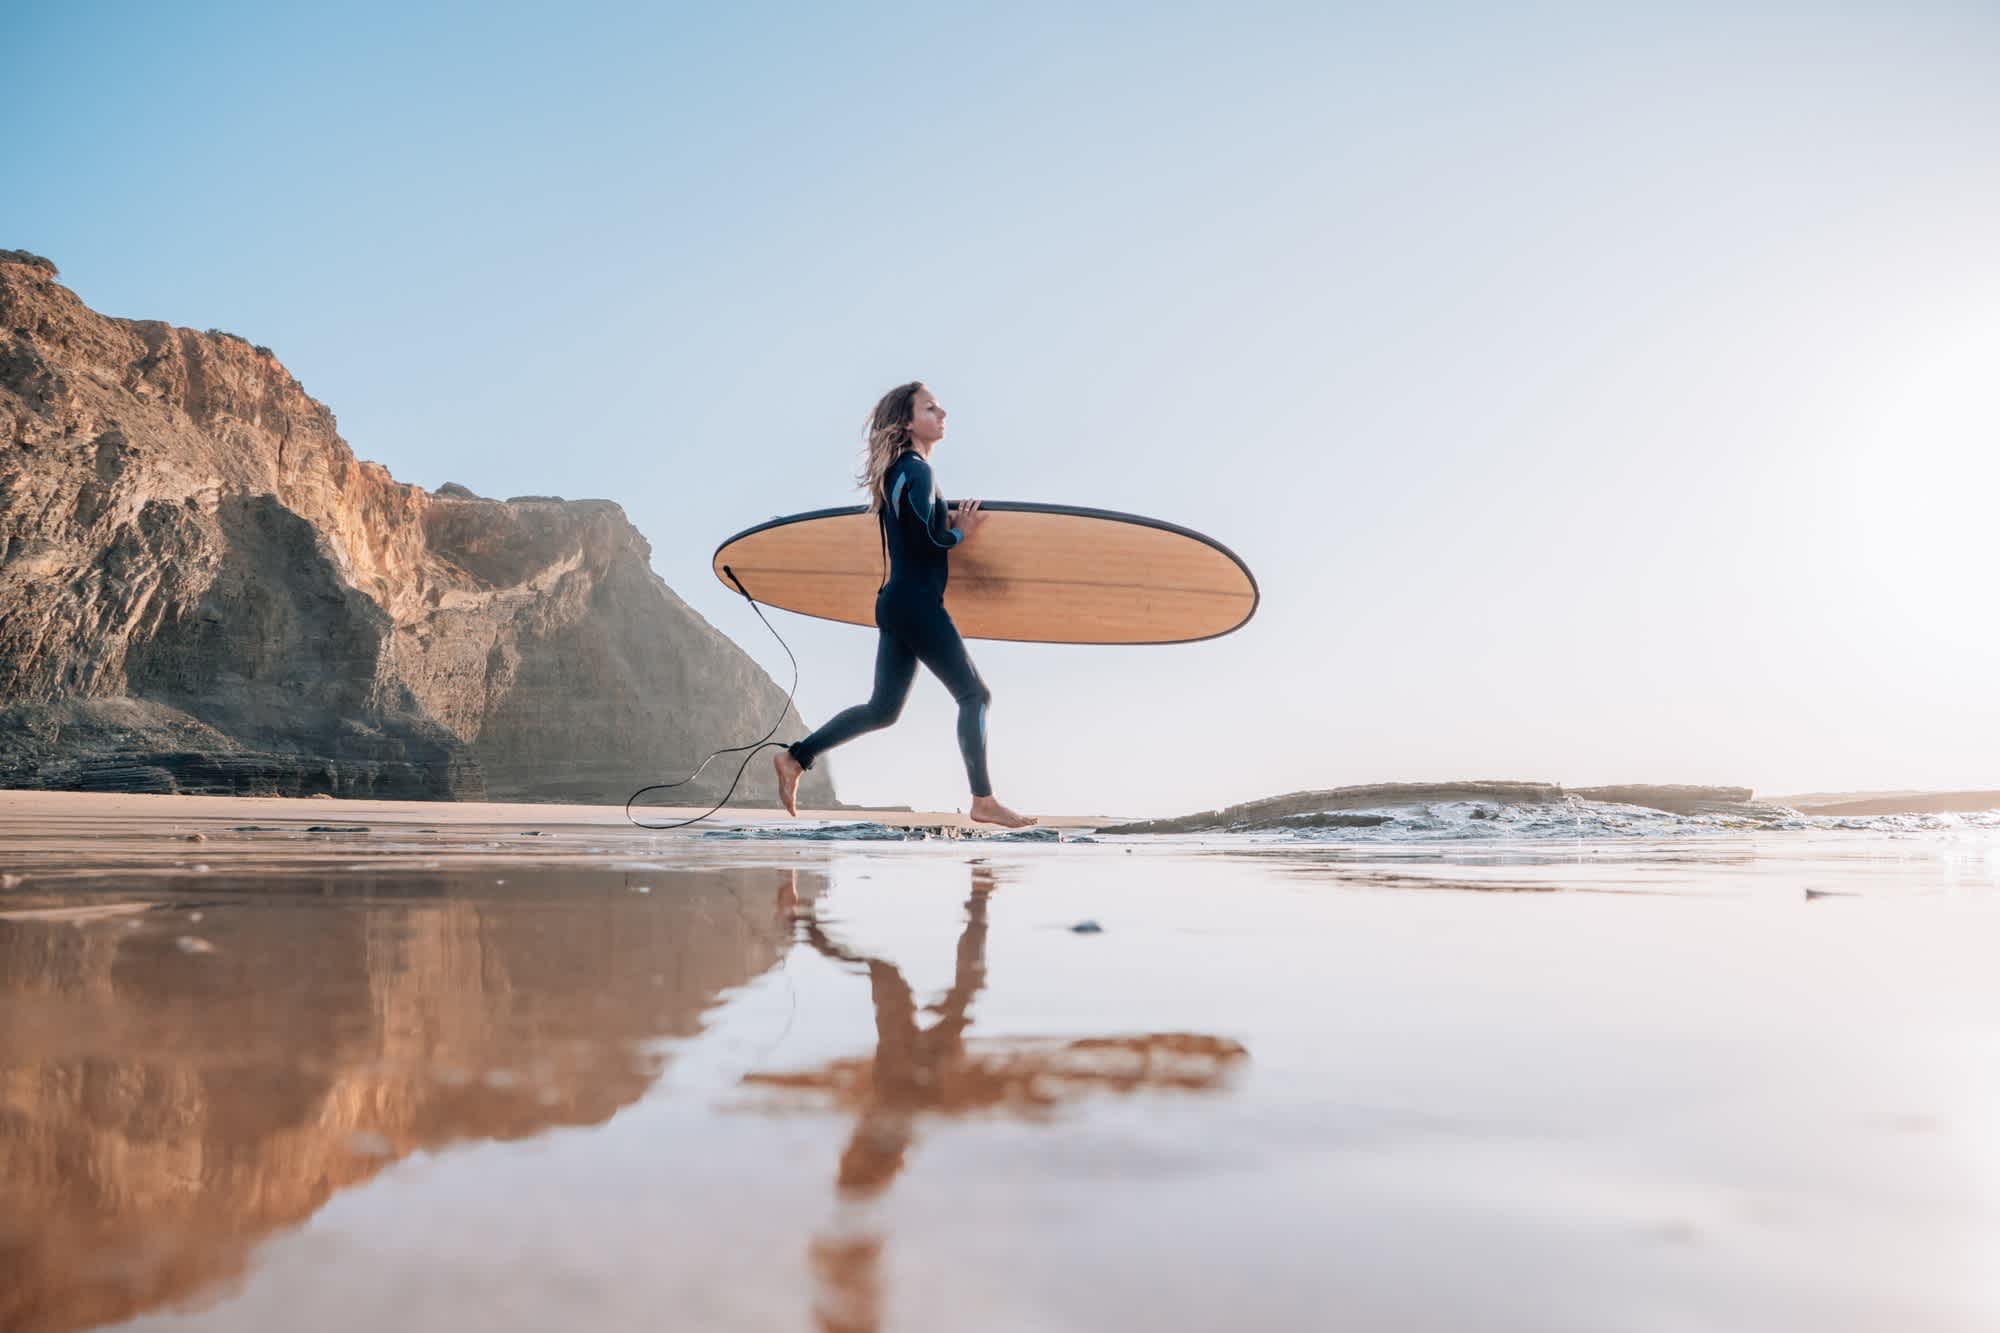 Femme surfeuse courant sur la plage au lever du soleil, Portugal